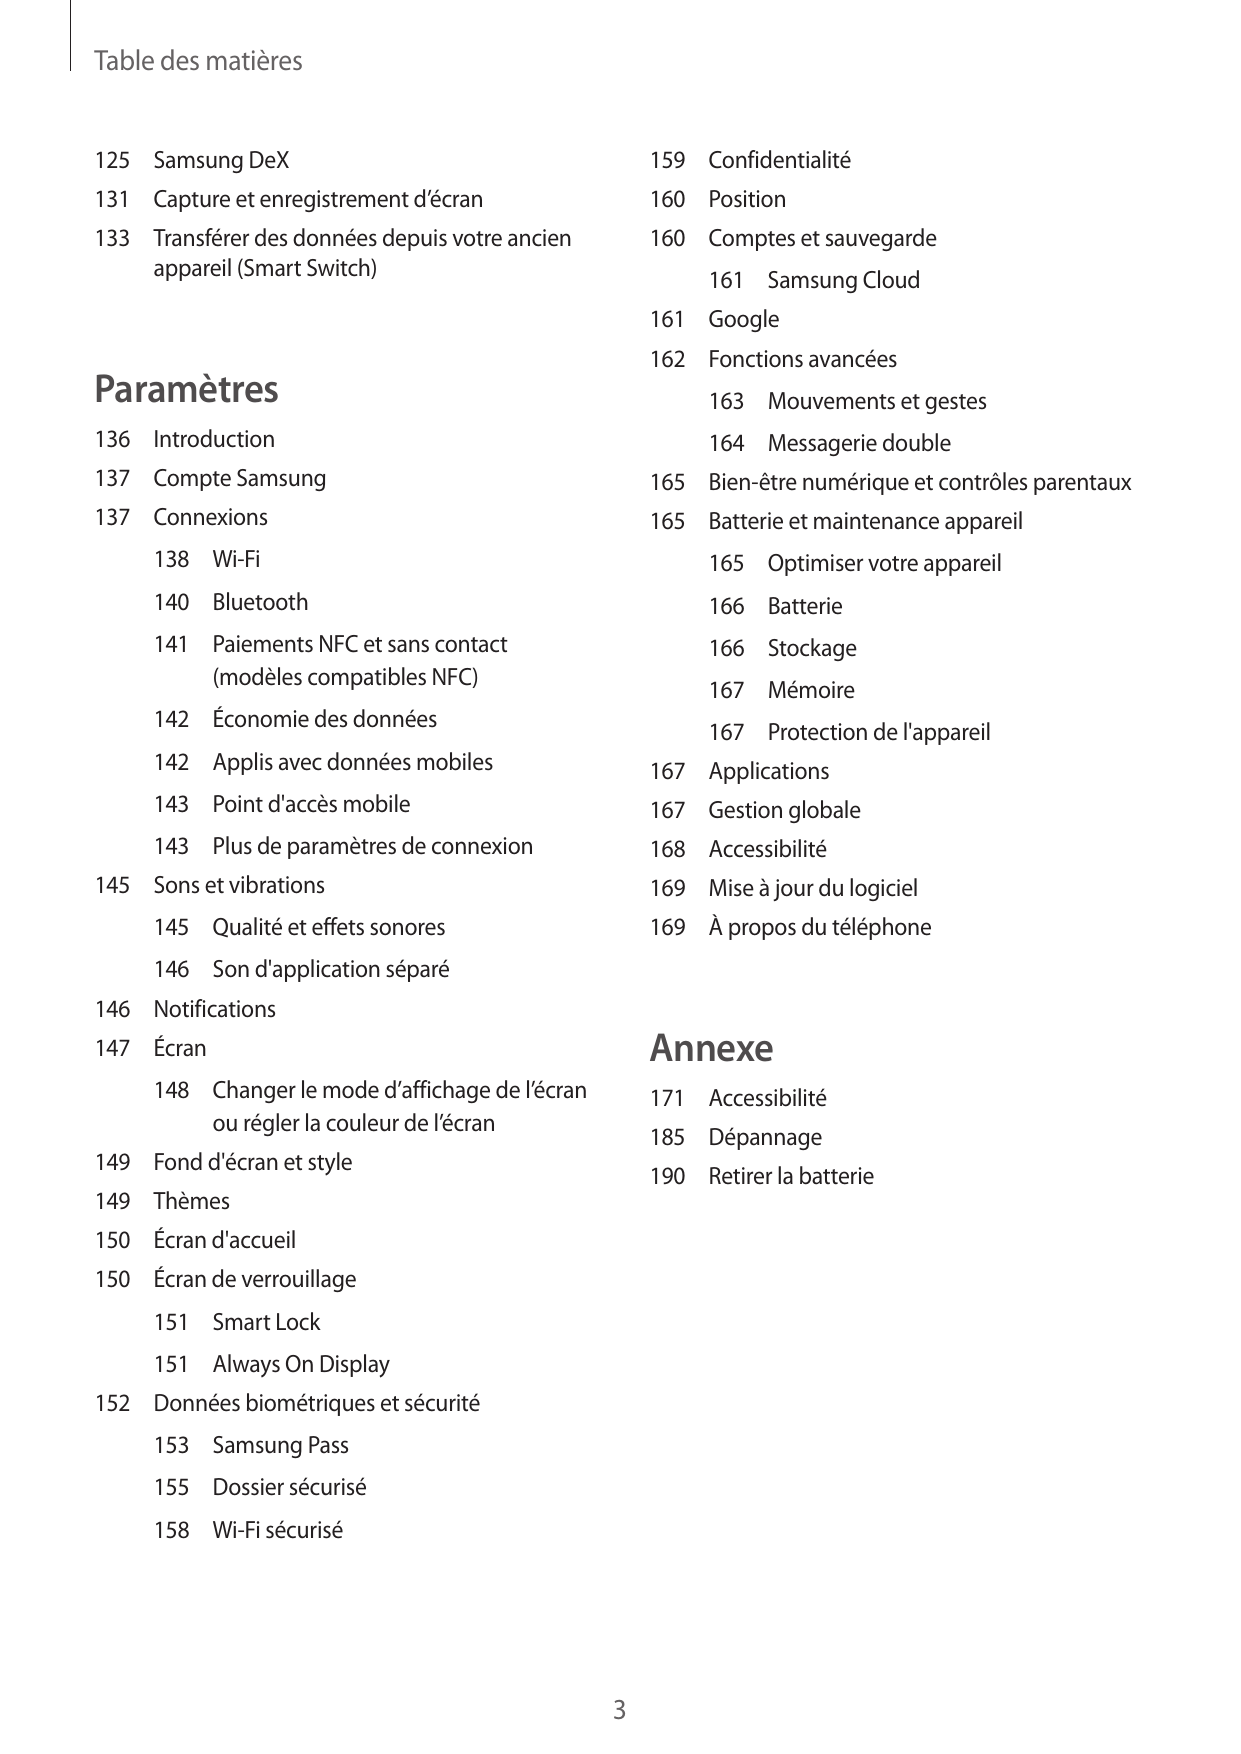 Table des matières125 Samsung DeX159Confidentialité131 Capture et enregistrement d’écran160Position133 Transférer des données de